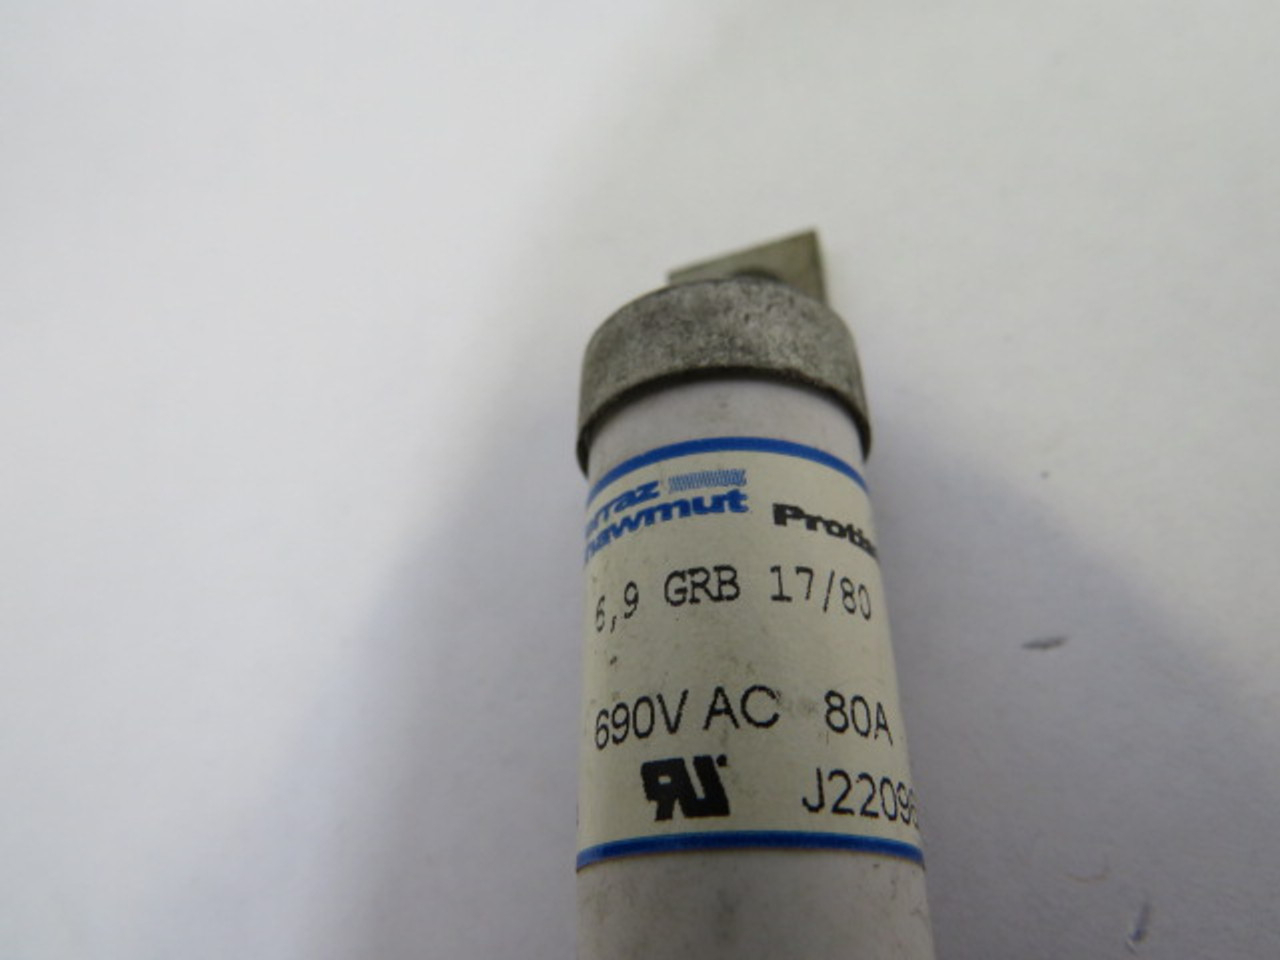 Ferraz Shawmut 6.9GRB17/80 Semiconductor Fuse 80A 690V USED